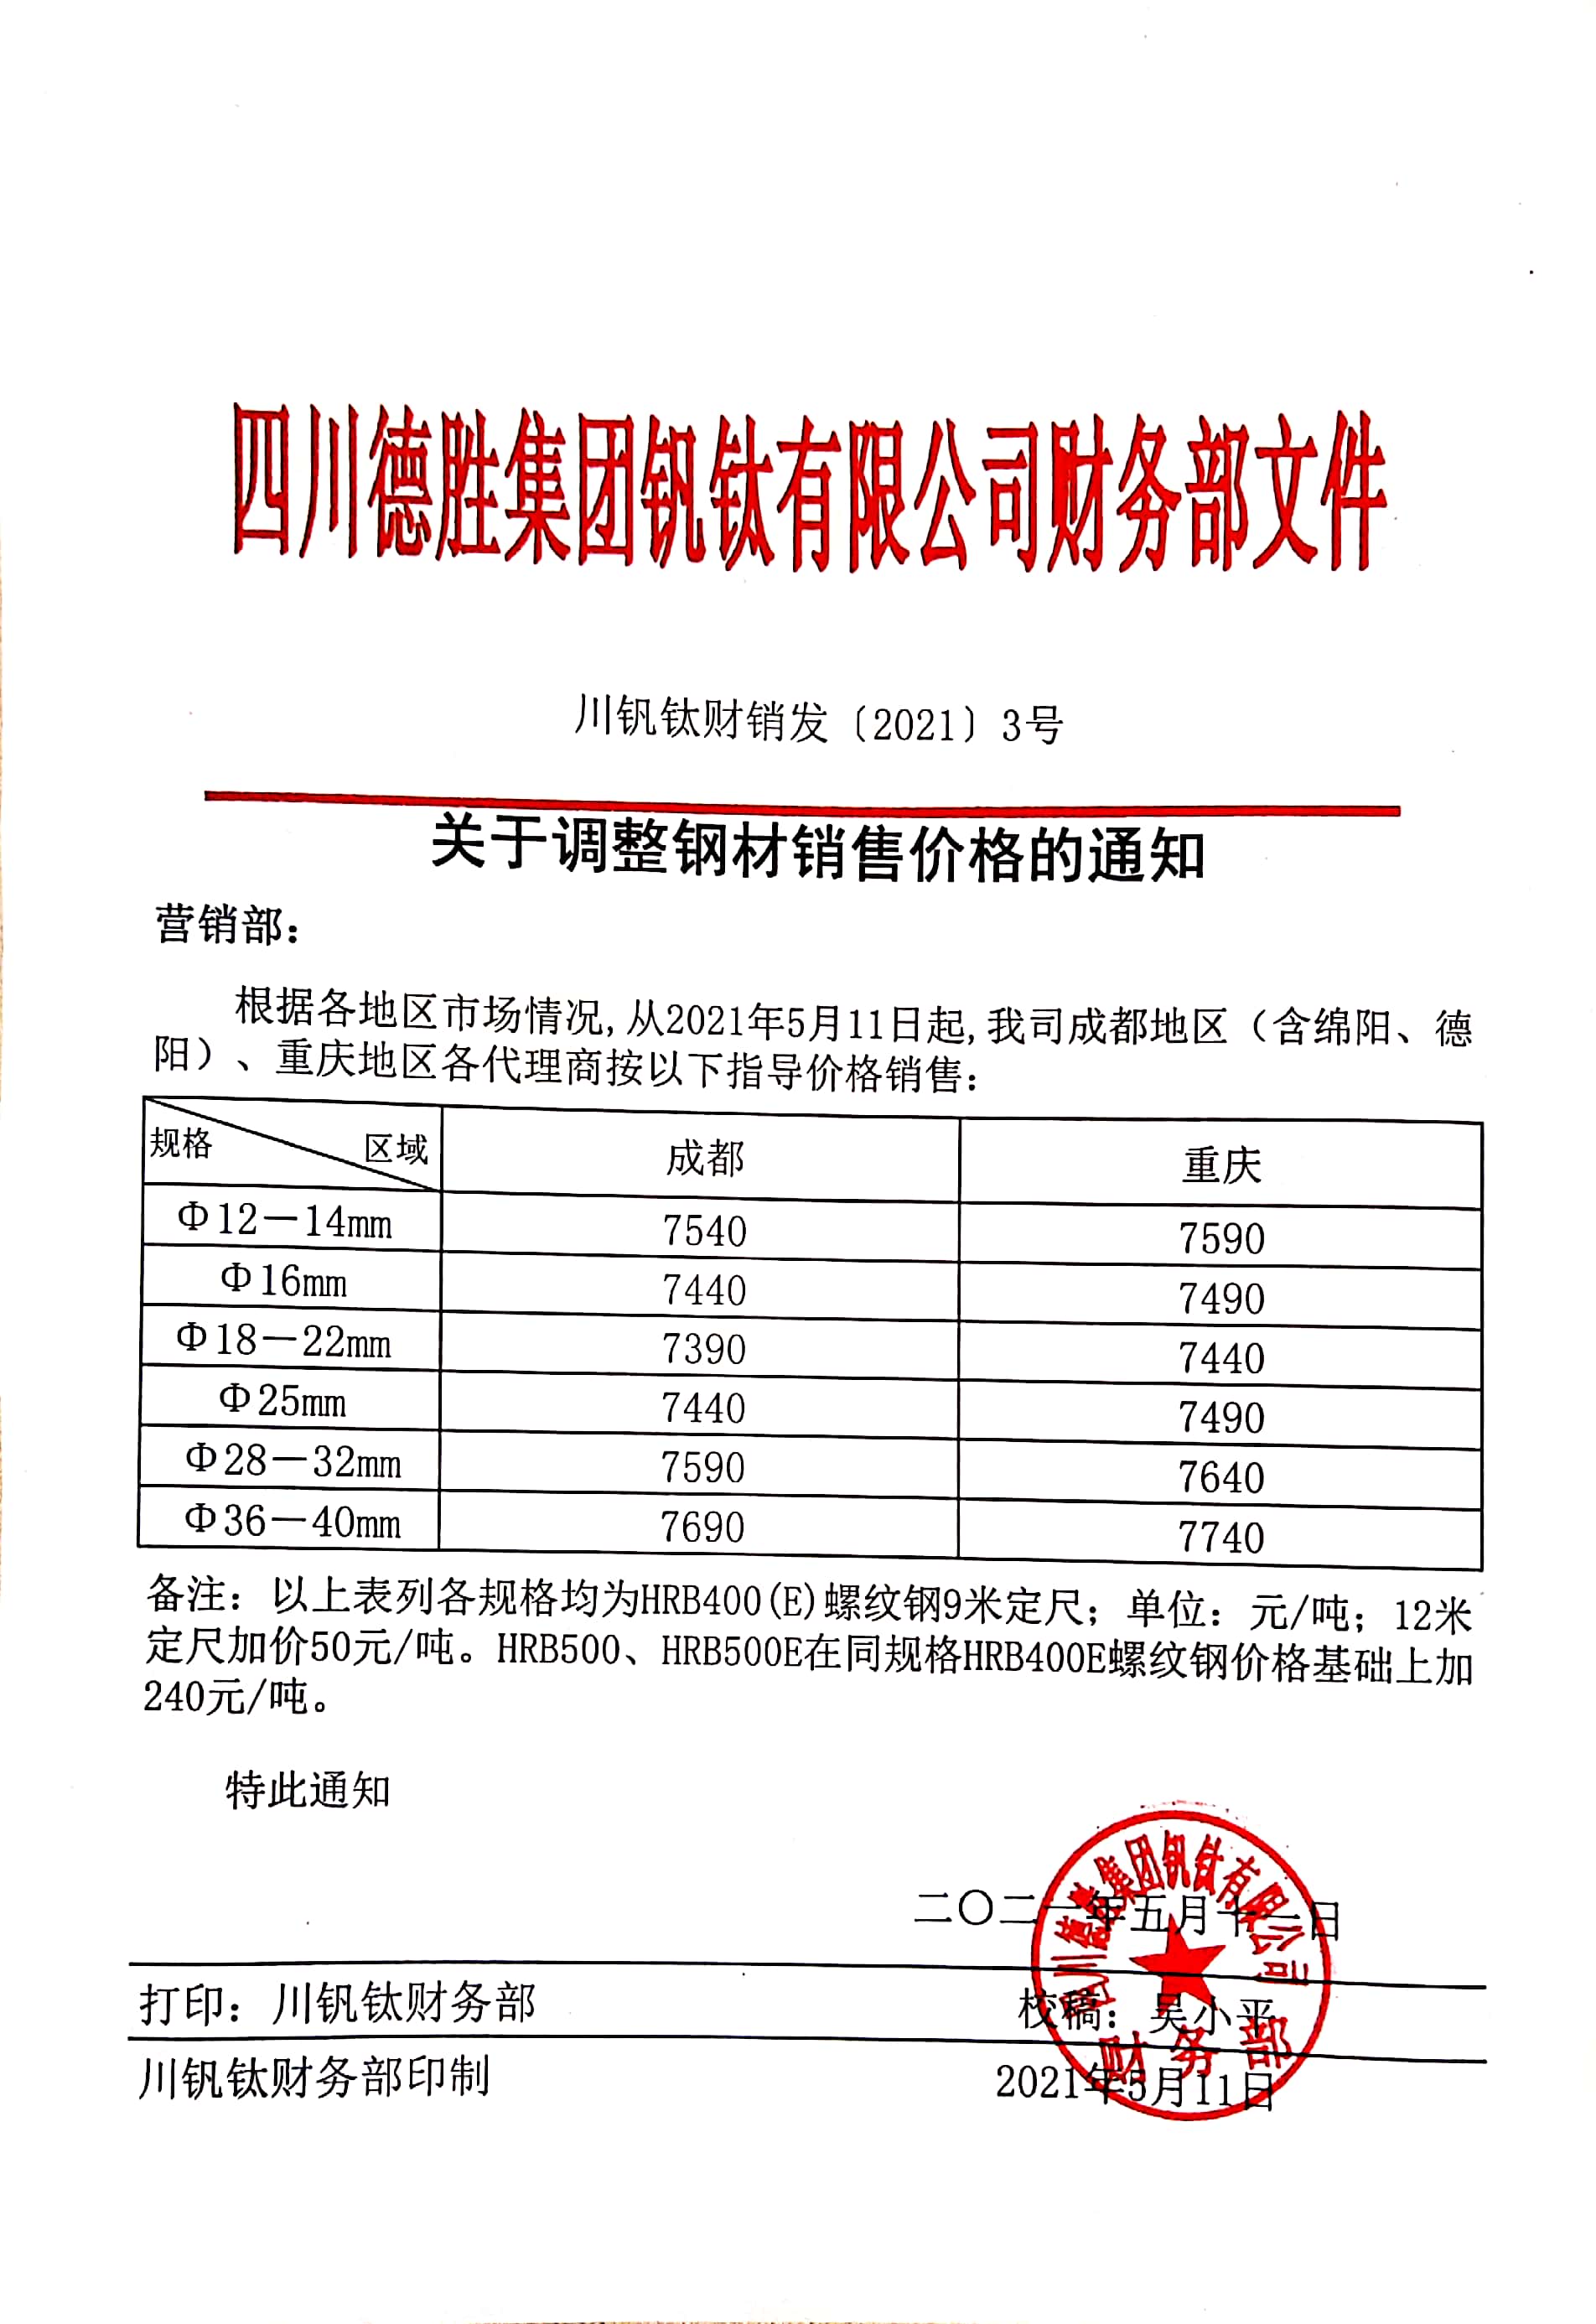 四川德胜集团钒钛有限公司5月11日钢材销售指导价